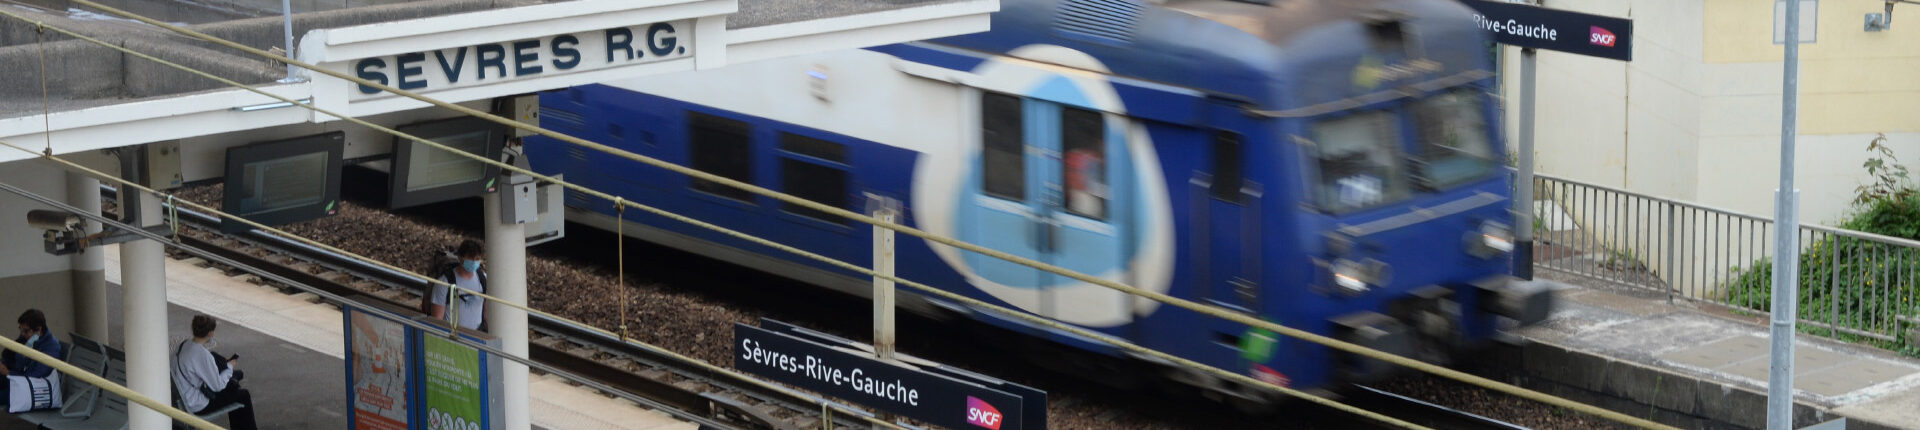 La SNCF renouvelle 18 km de voies sur la ligne N